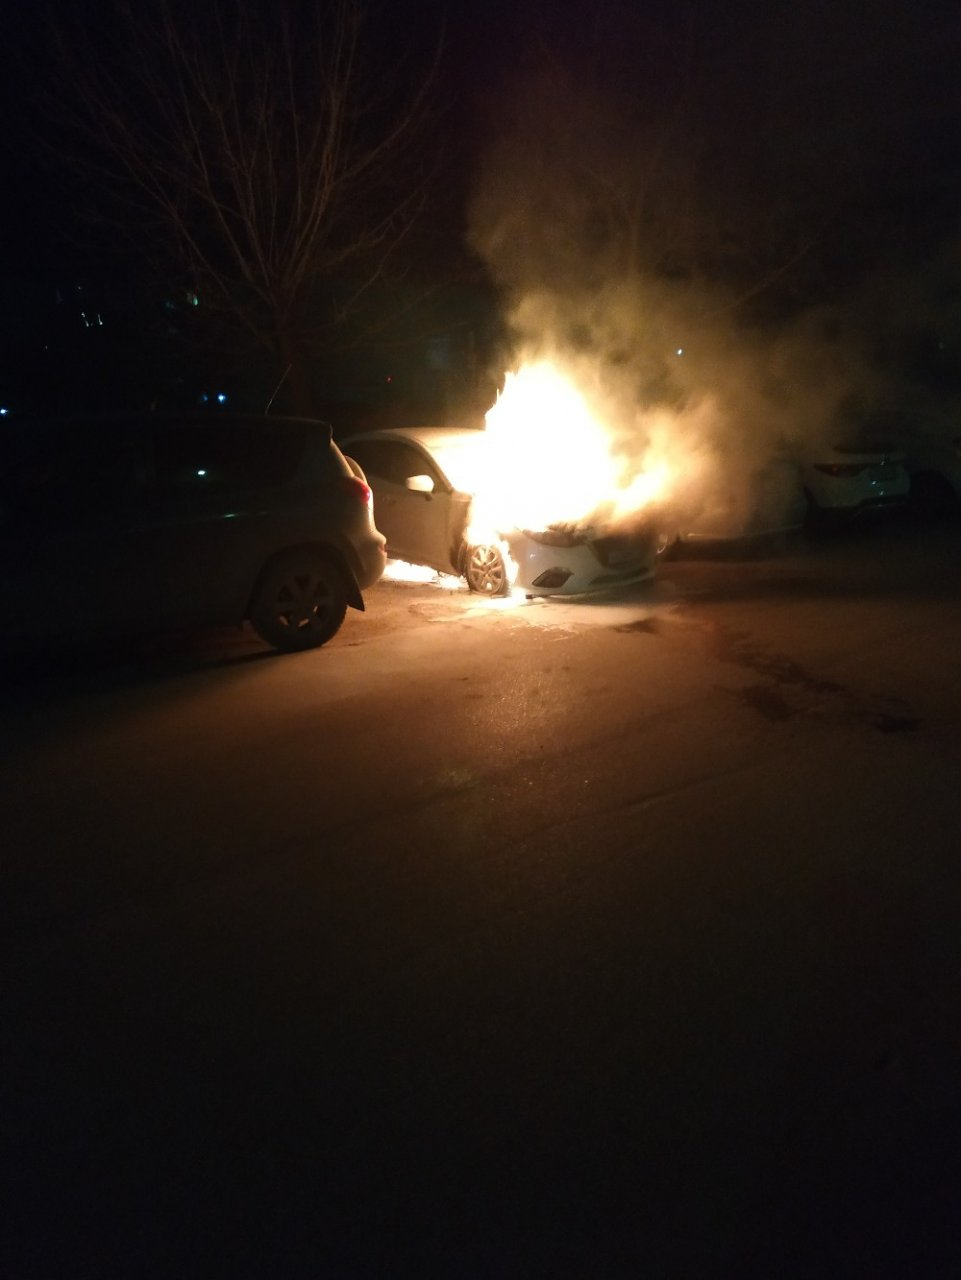 Кому-то насолил или случайность: в Дзержинске сгорел автомобиль (ФОТО и ВИДЕО)